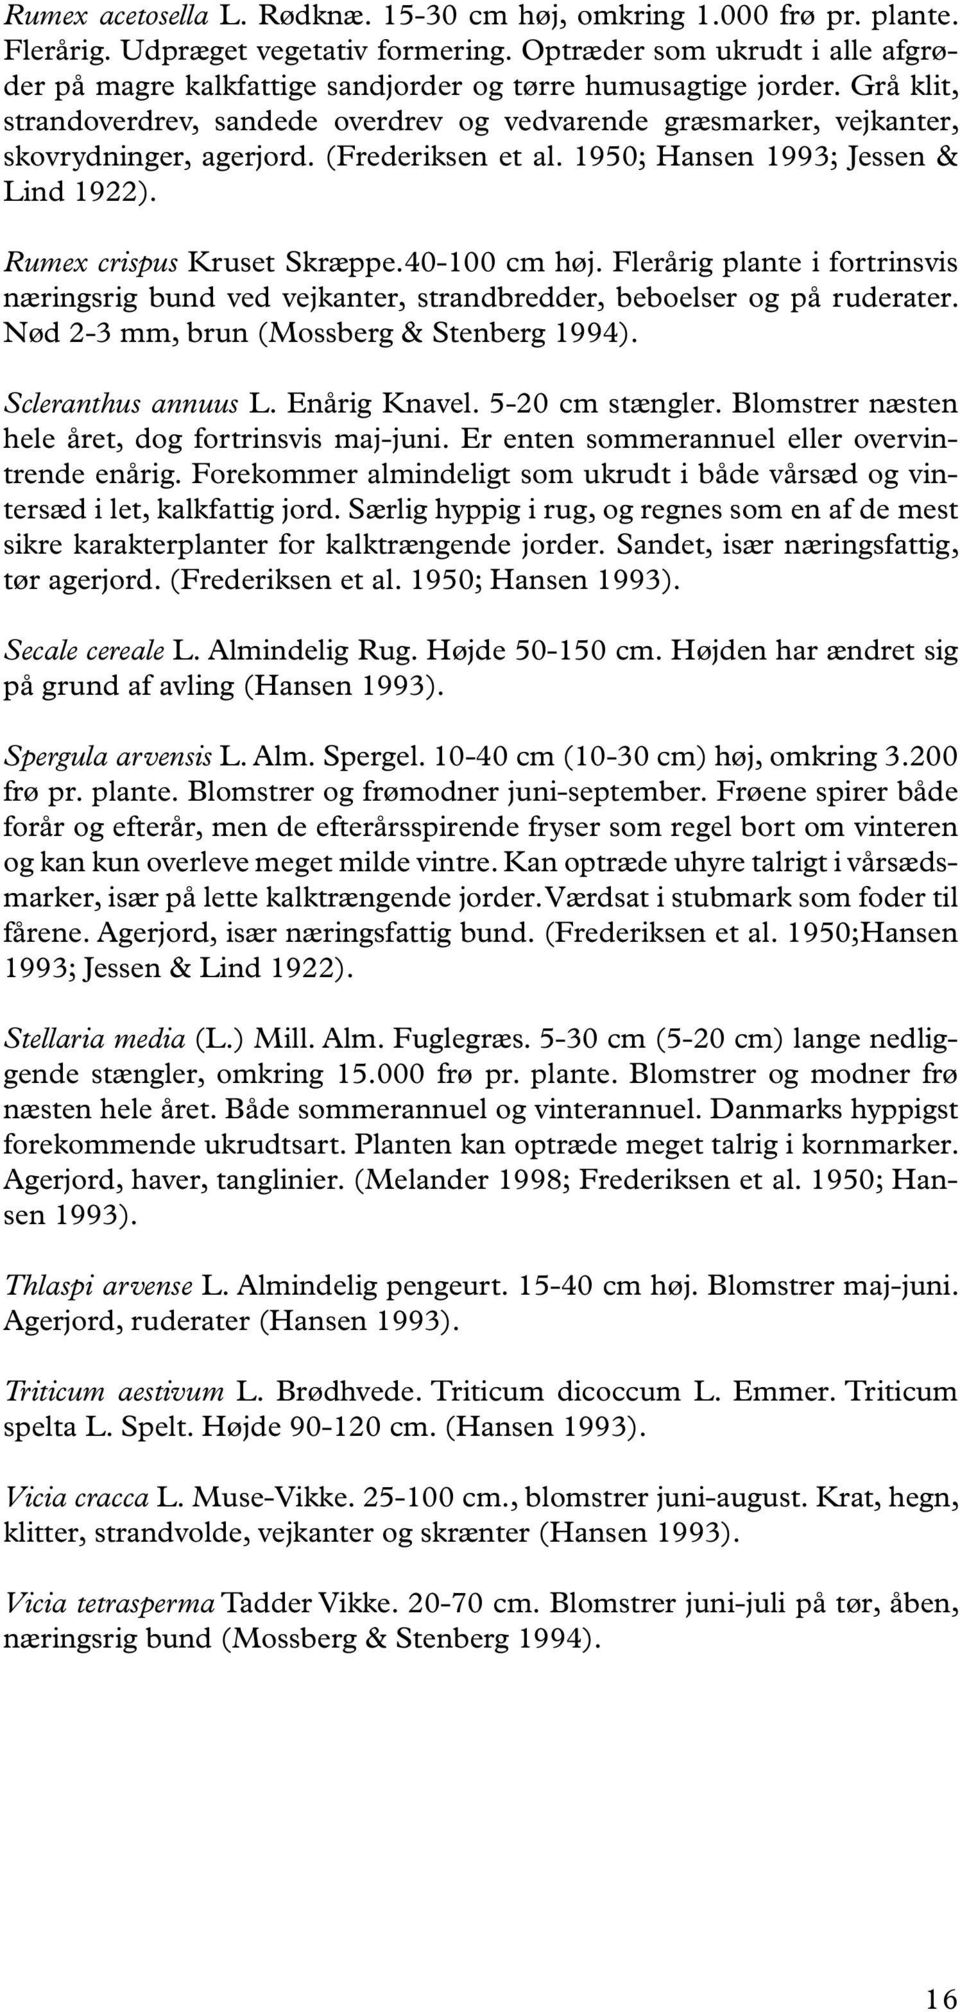 Grå klit, strandoverdrev, sandede overdrev og vedvarende græsmarker, vejkanter, skovrydninger, agerjord. (Frederiksen et al. 1950; Hansen 1993; Jessen & Lind 1922). Rumex crispus Kruset Skræppe.